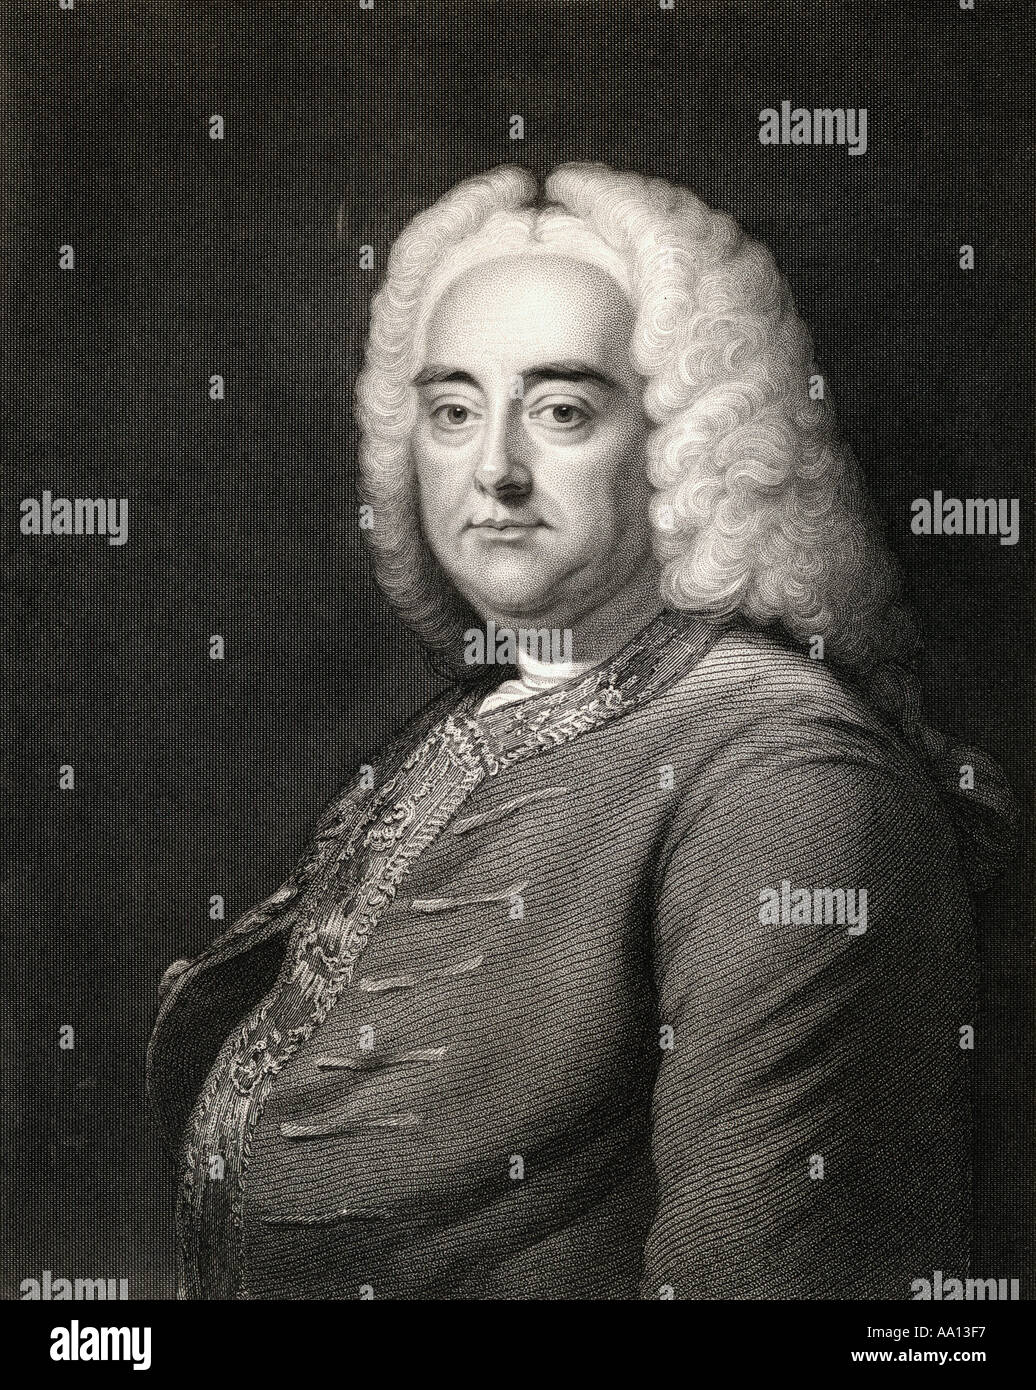 George Frideric (o Frederick) Handel, 1685 - 1759. Alemán nacido compositor inglés de la época barroca tardía Foto de stock